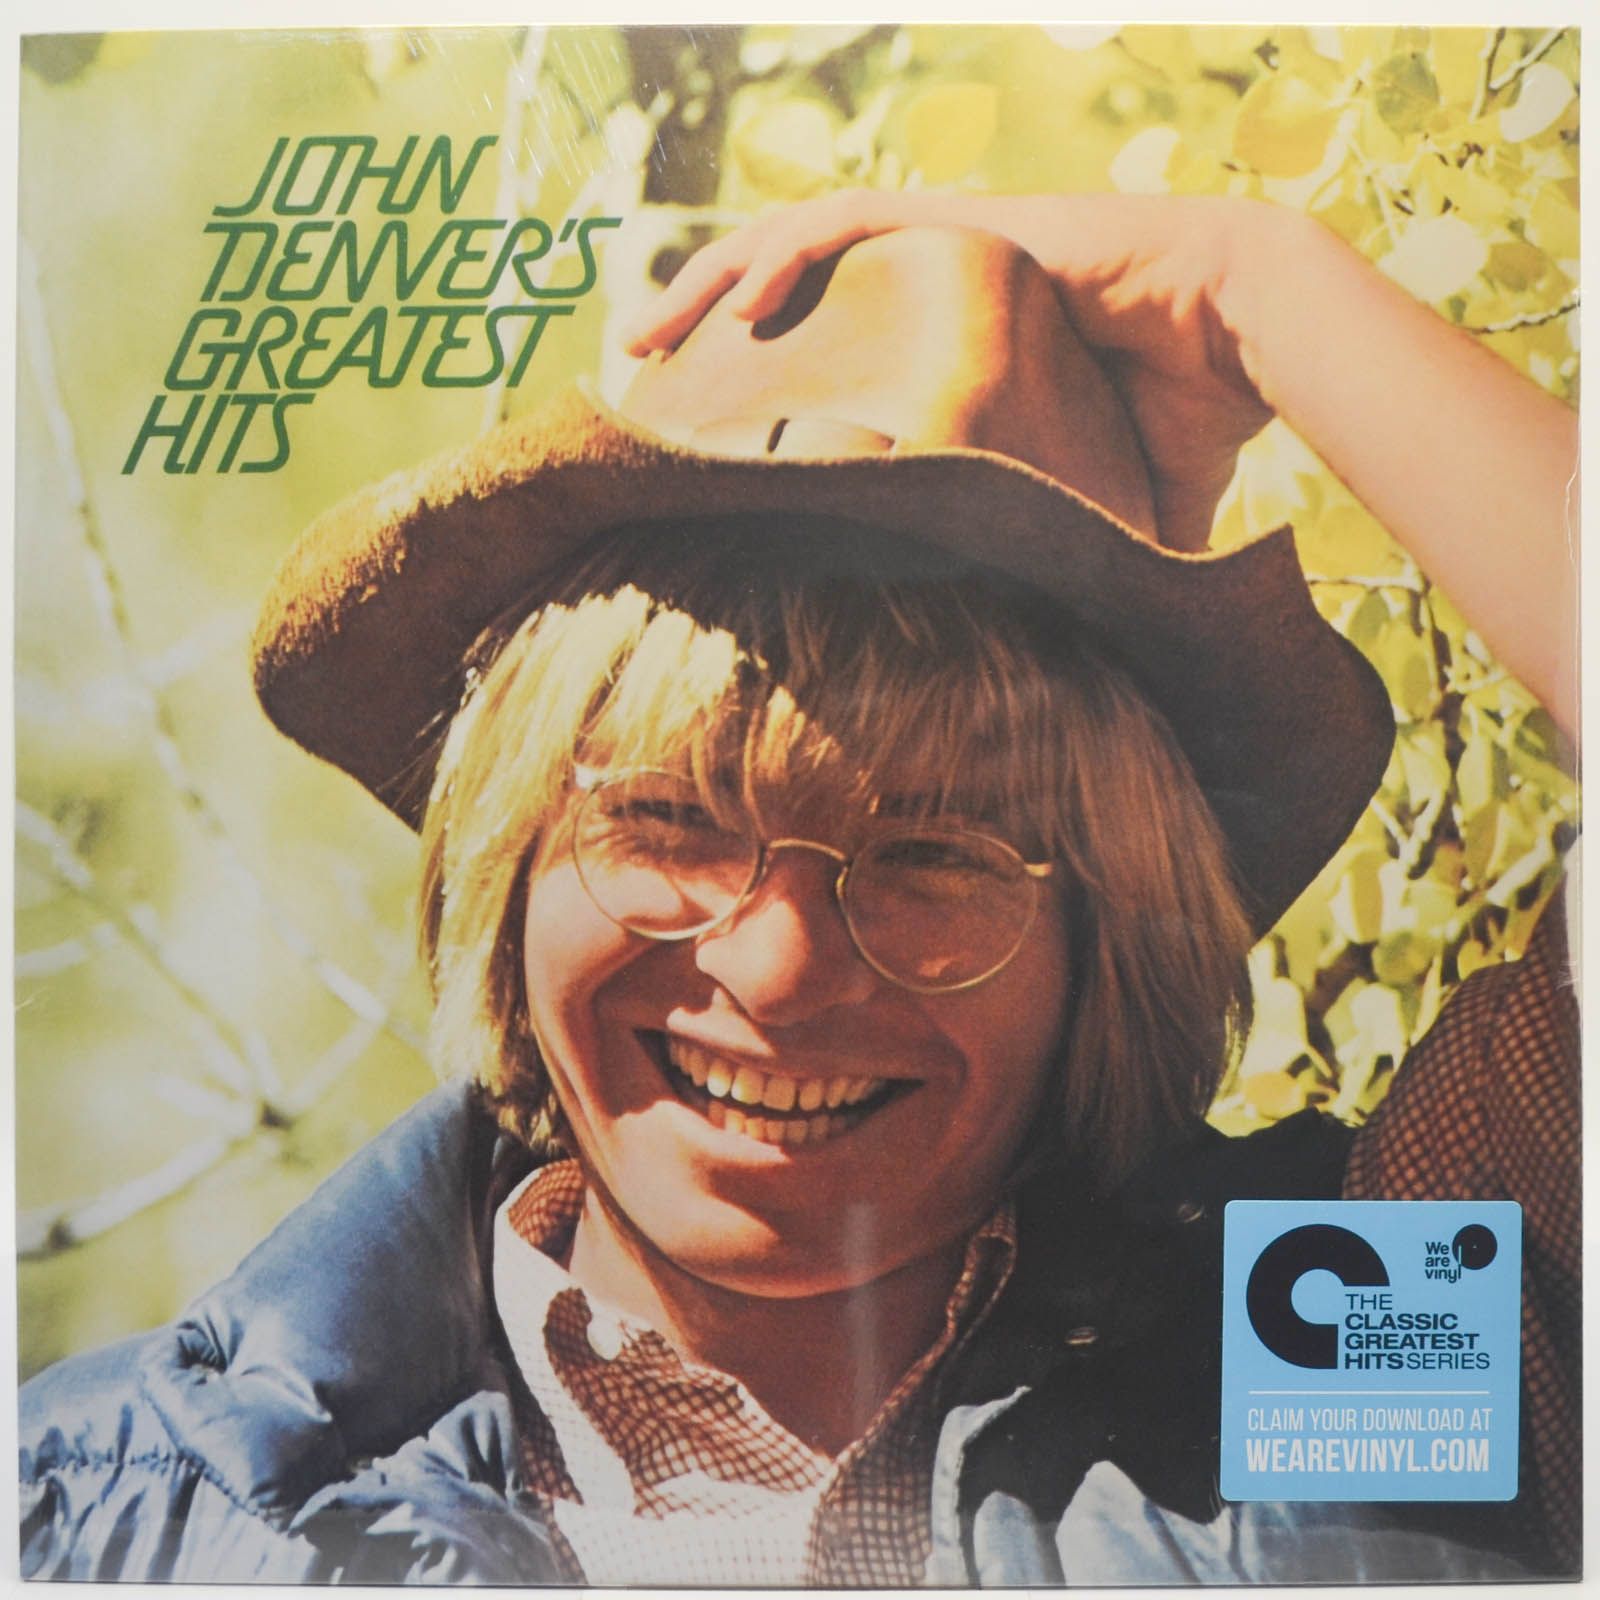 John Denver — John Denver's Greatest Hits, 1972